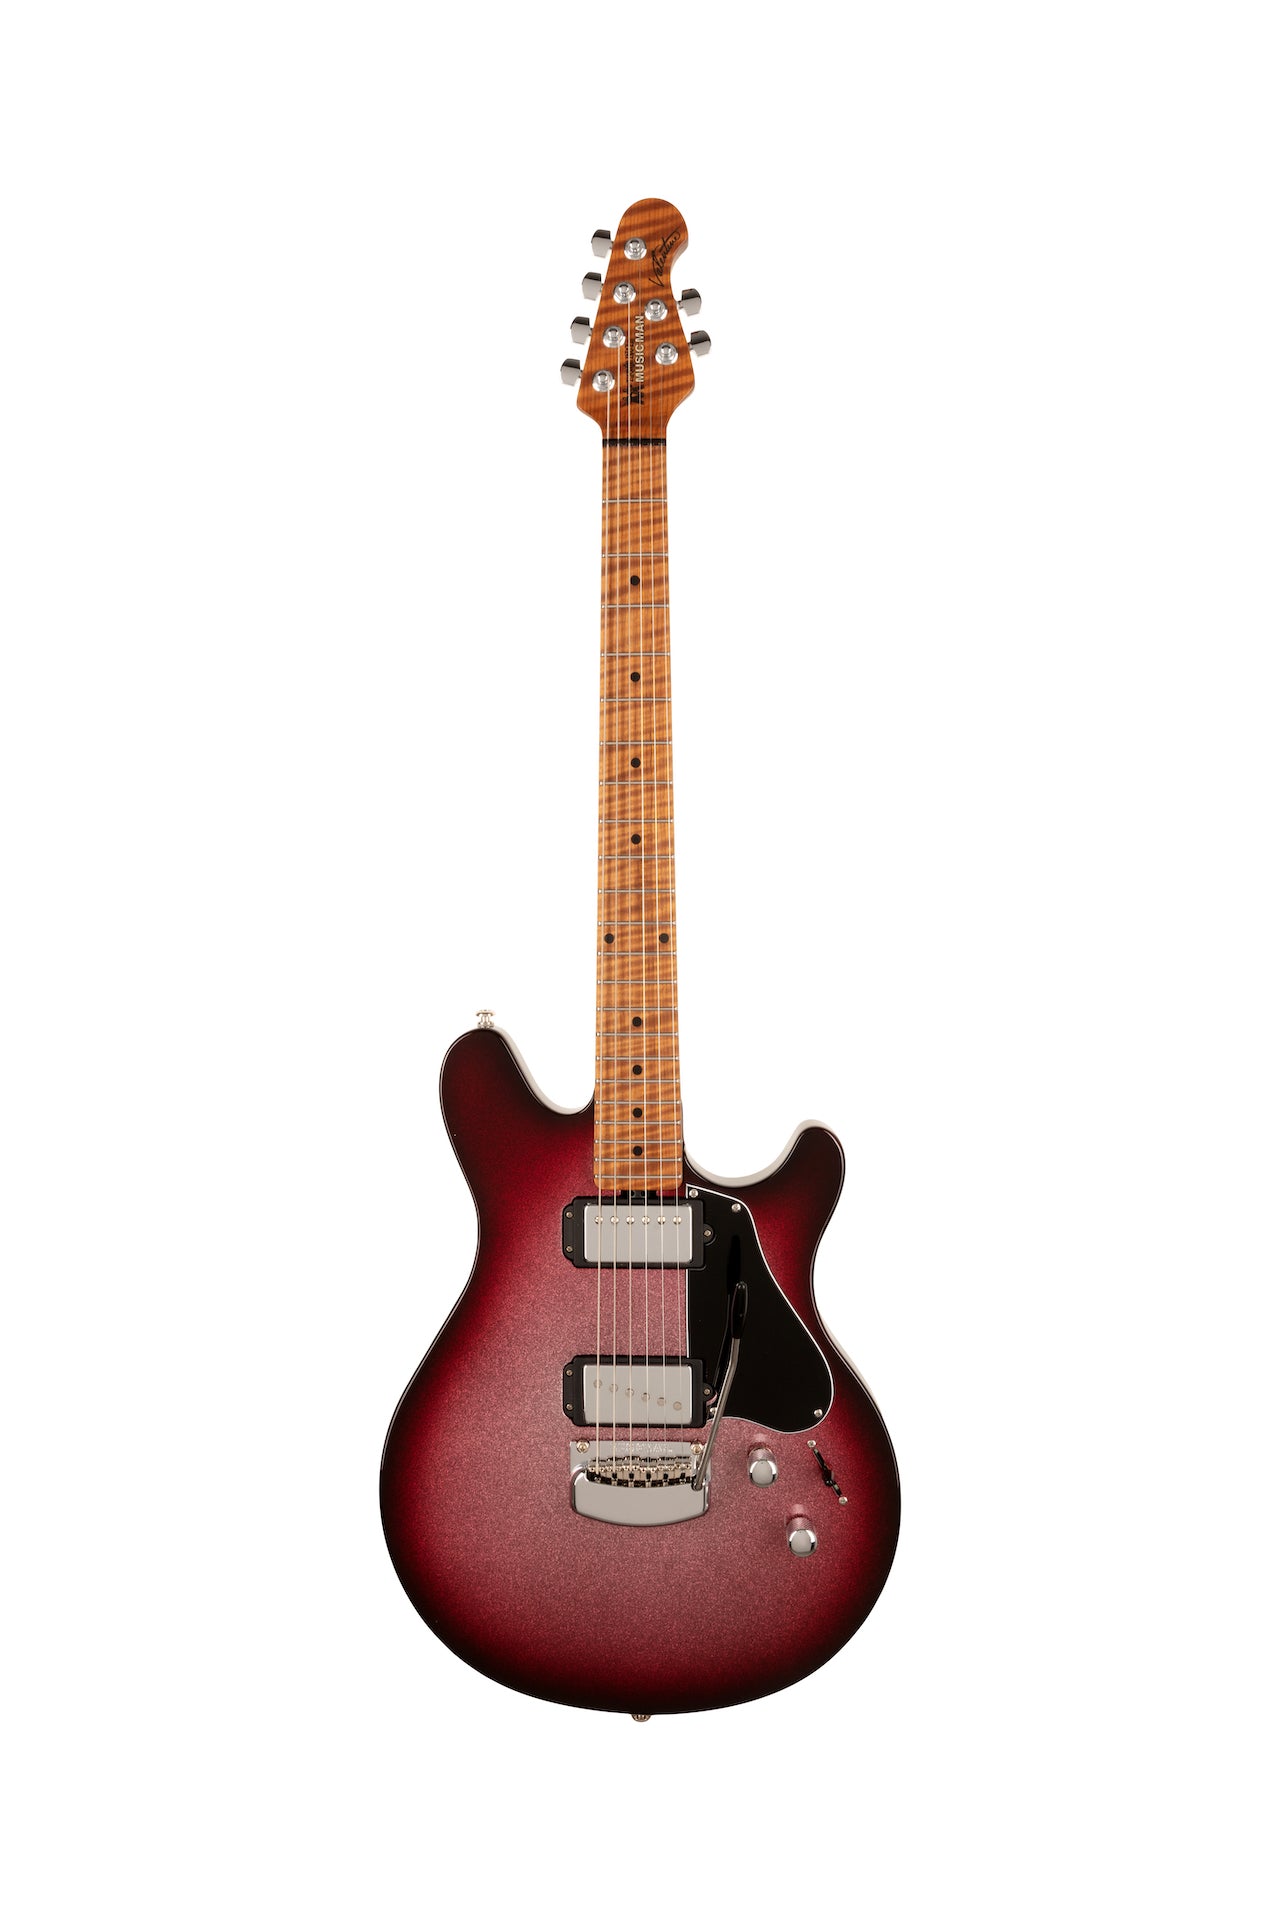 Ernie Ball Music Man Valentine Tremolo Electric Guitar - Maroon Sparkle Burst H00556 - HIENDGUITAR   Musicman GUITAR